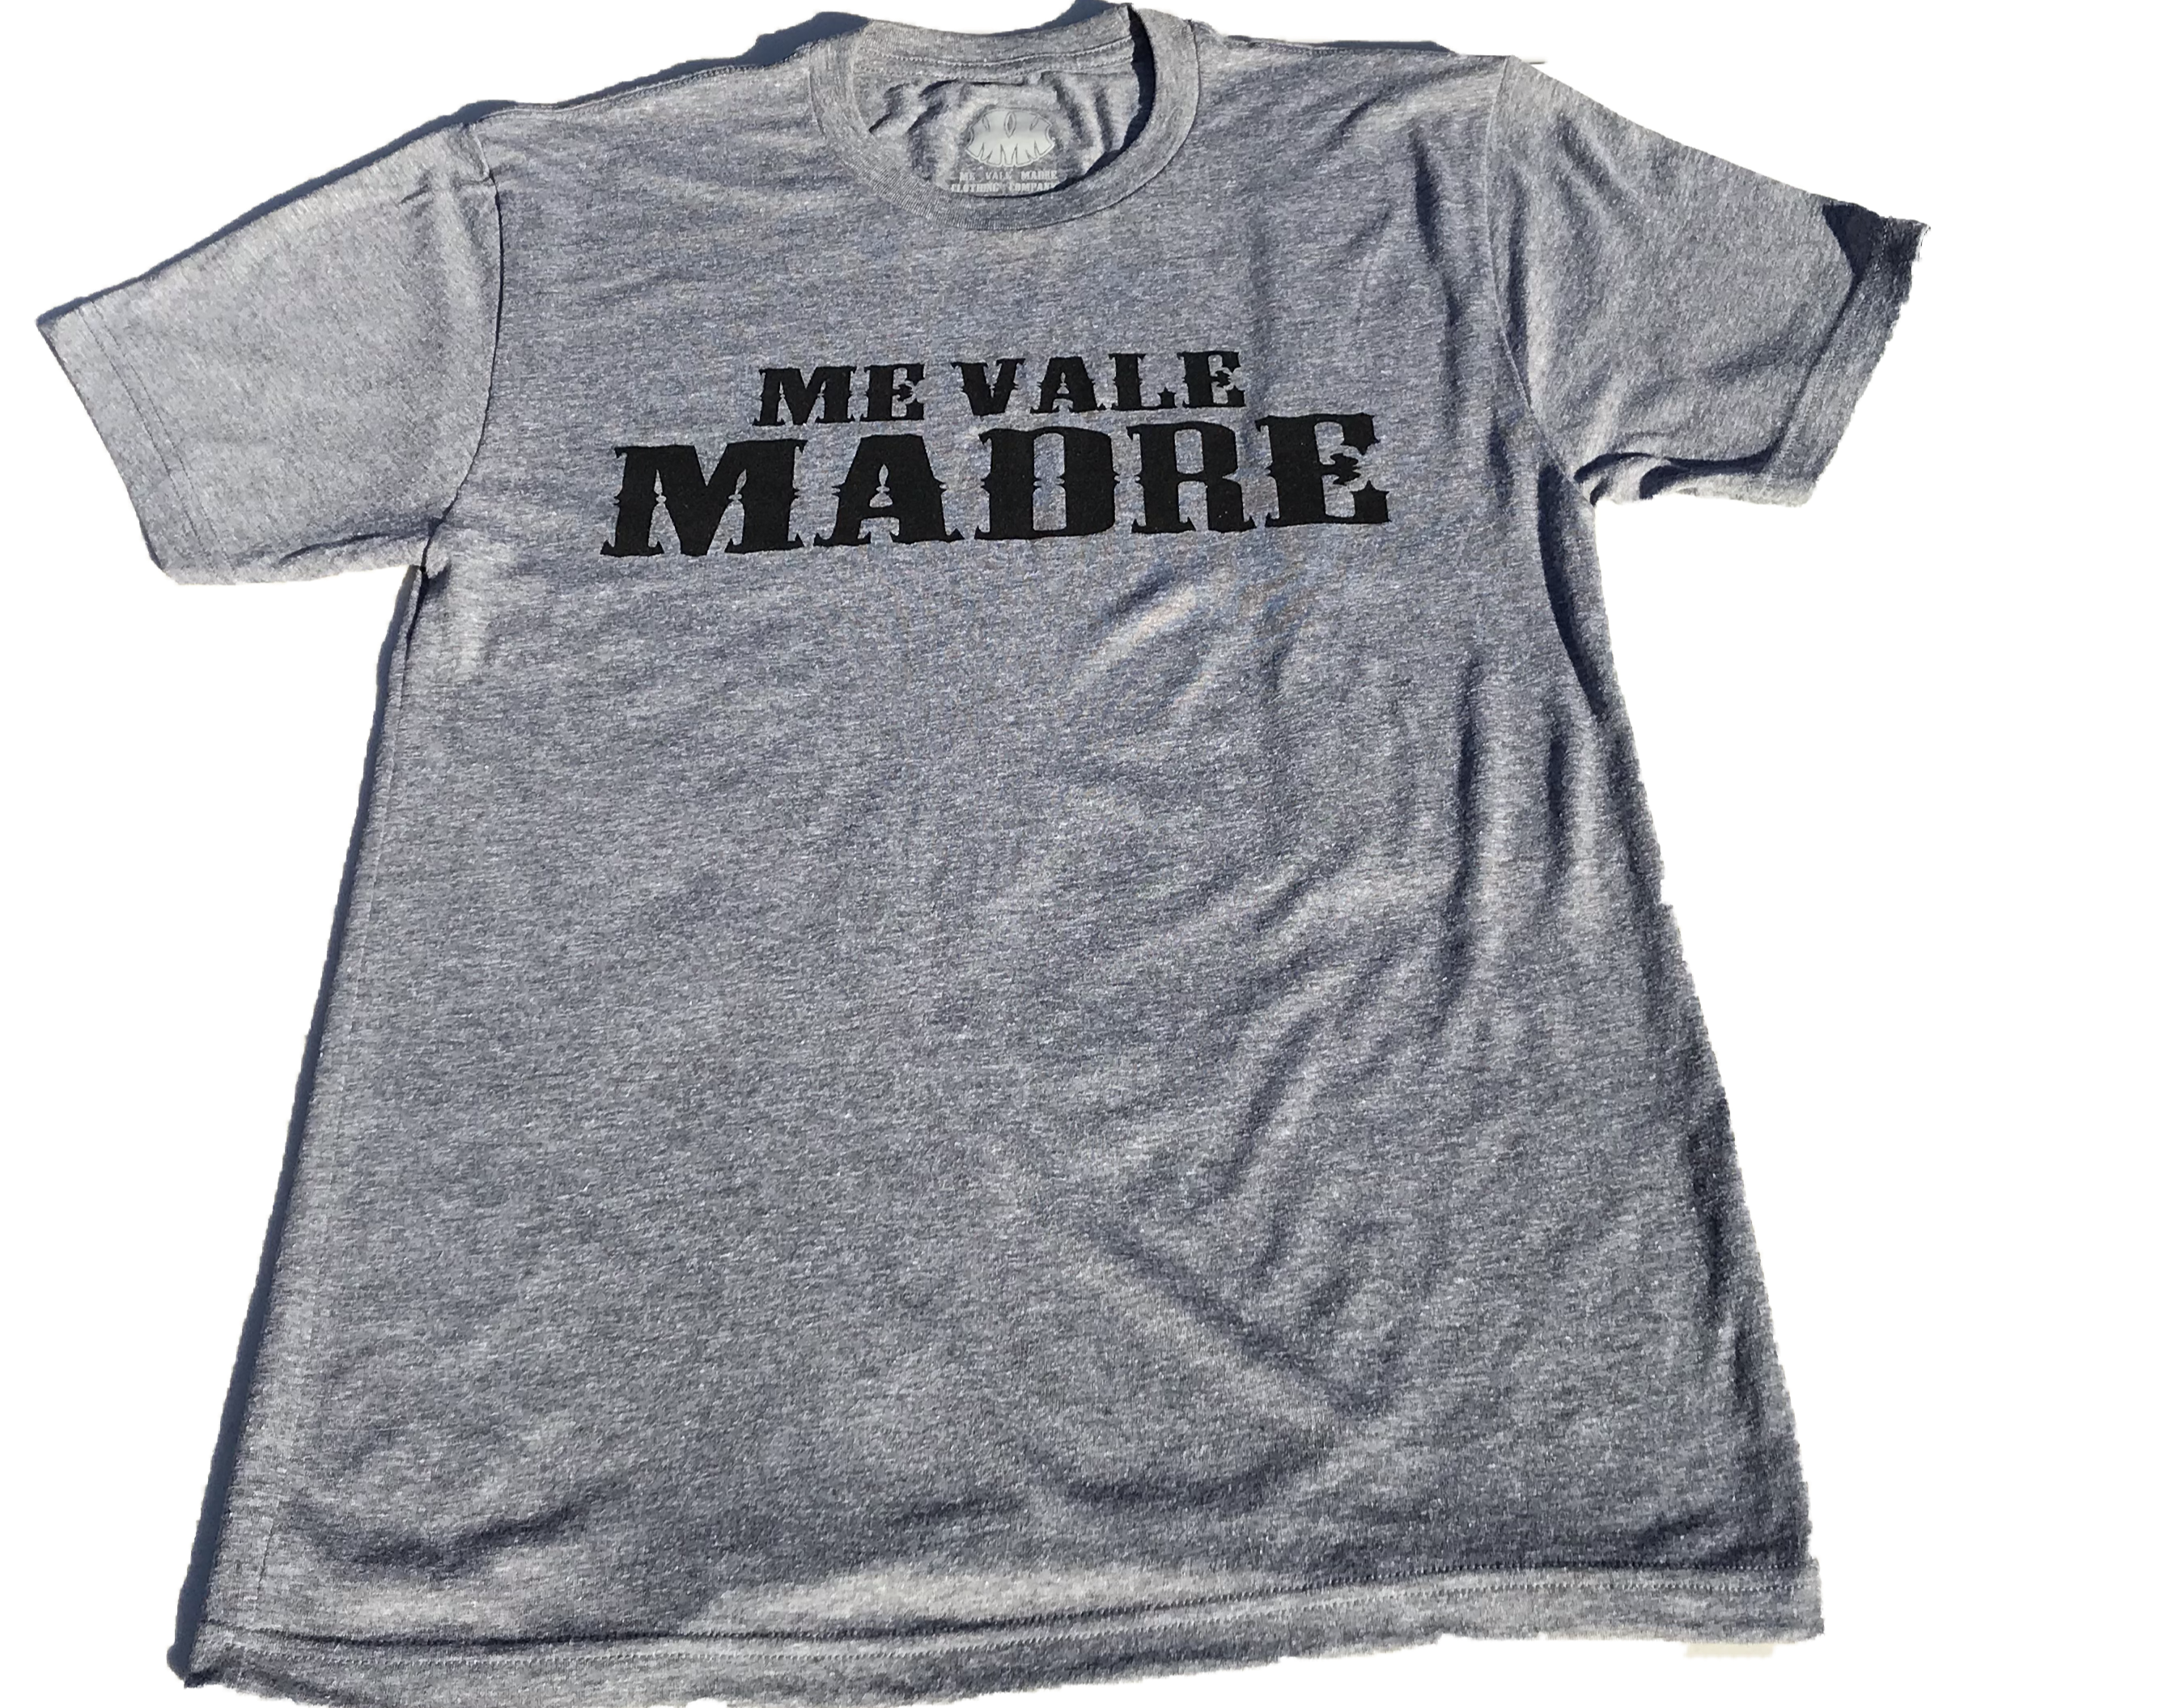 Me Vale Madre “OG” T-shirt